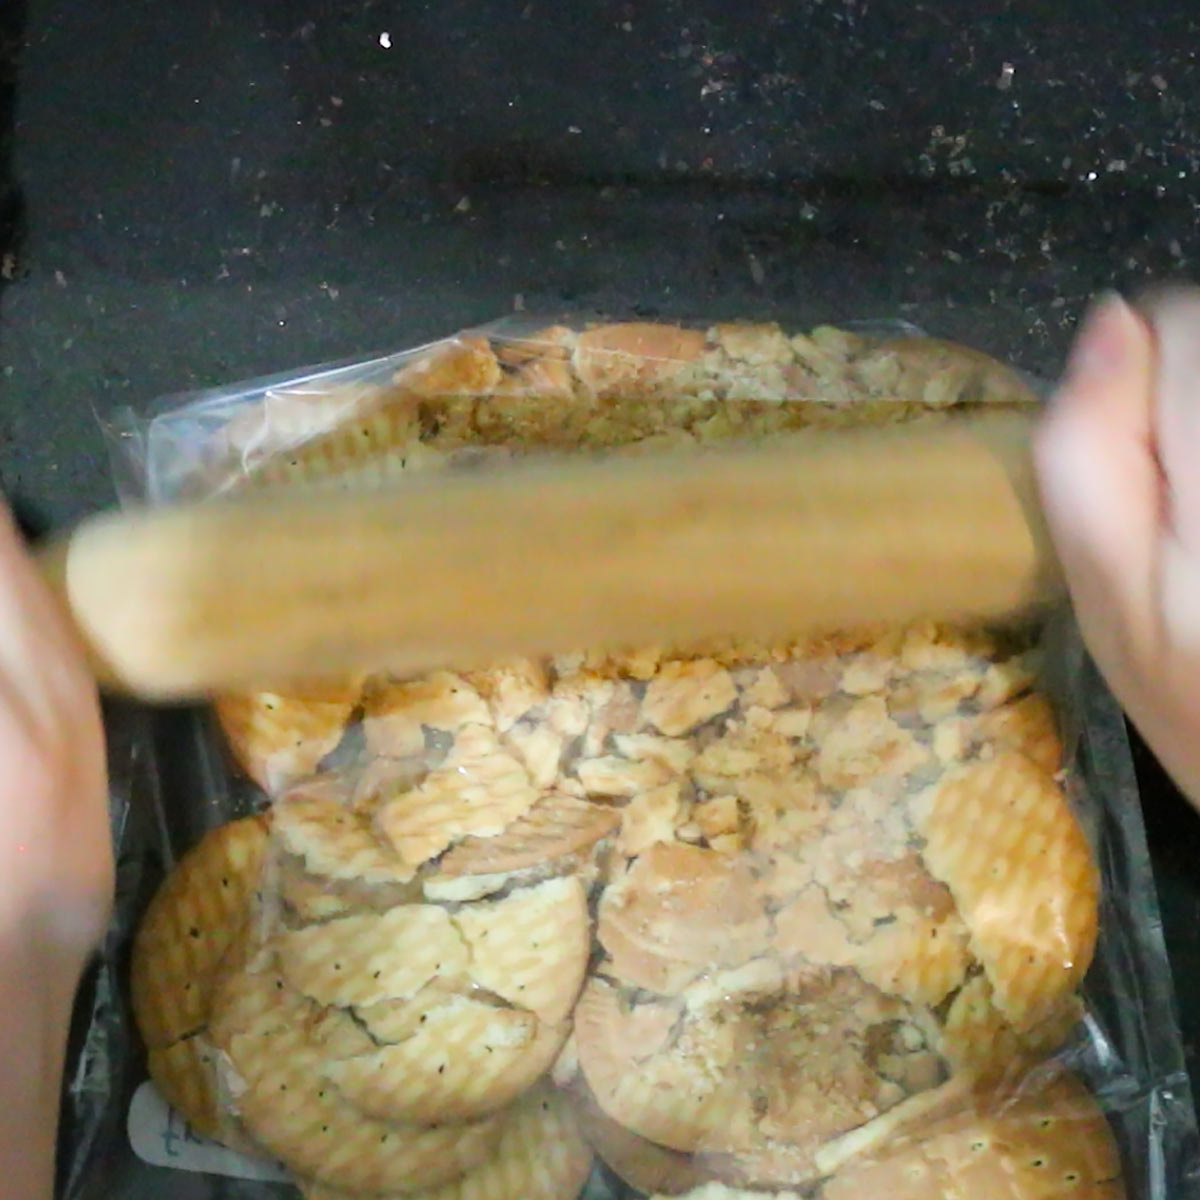 crushing cookies in a zip lock bag